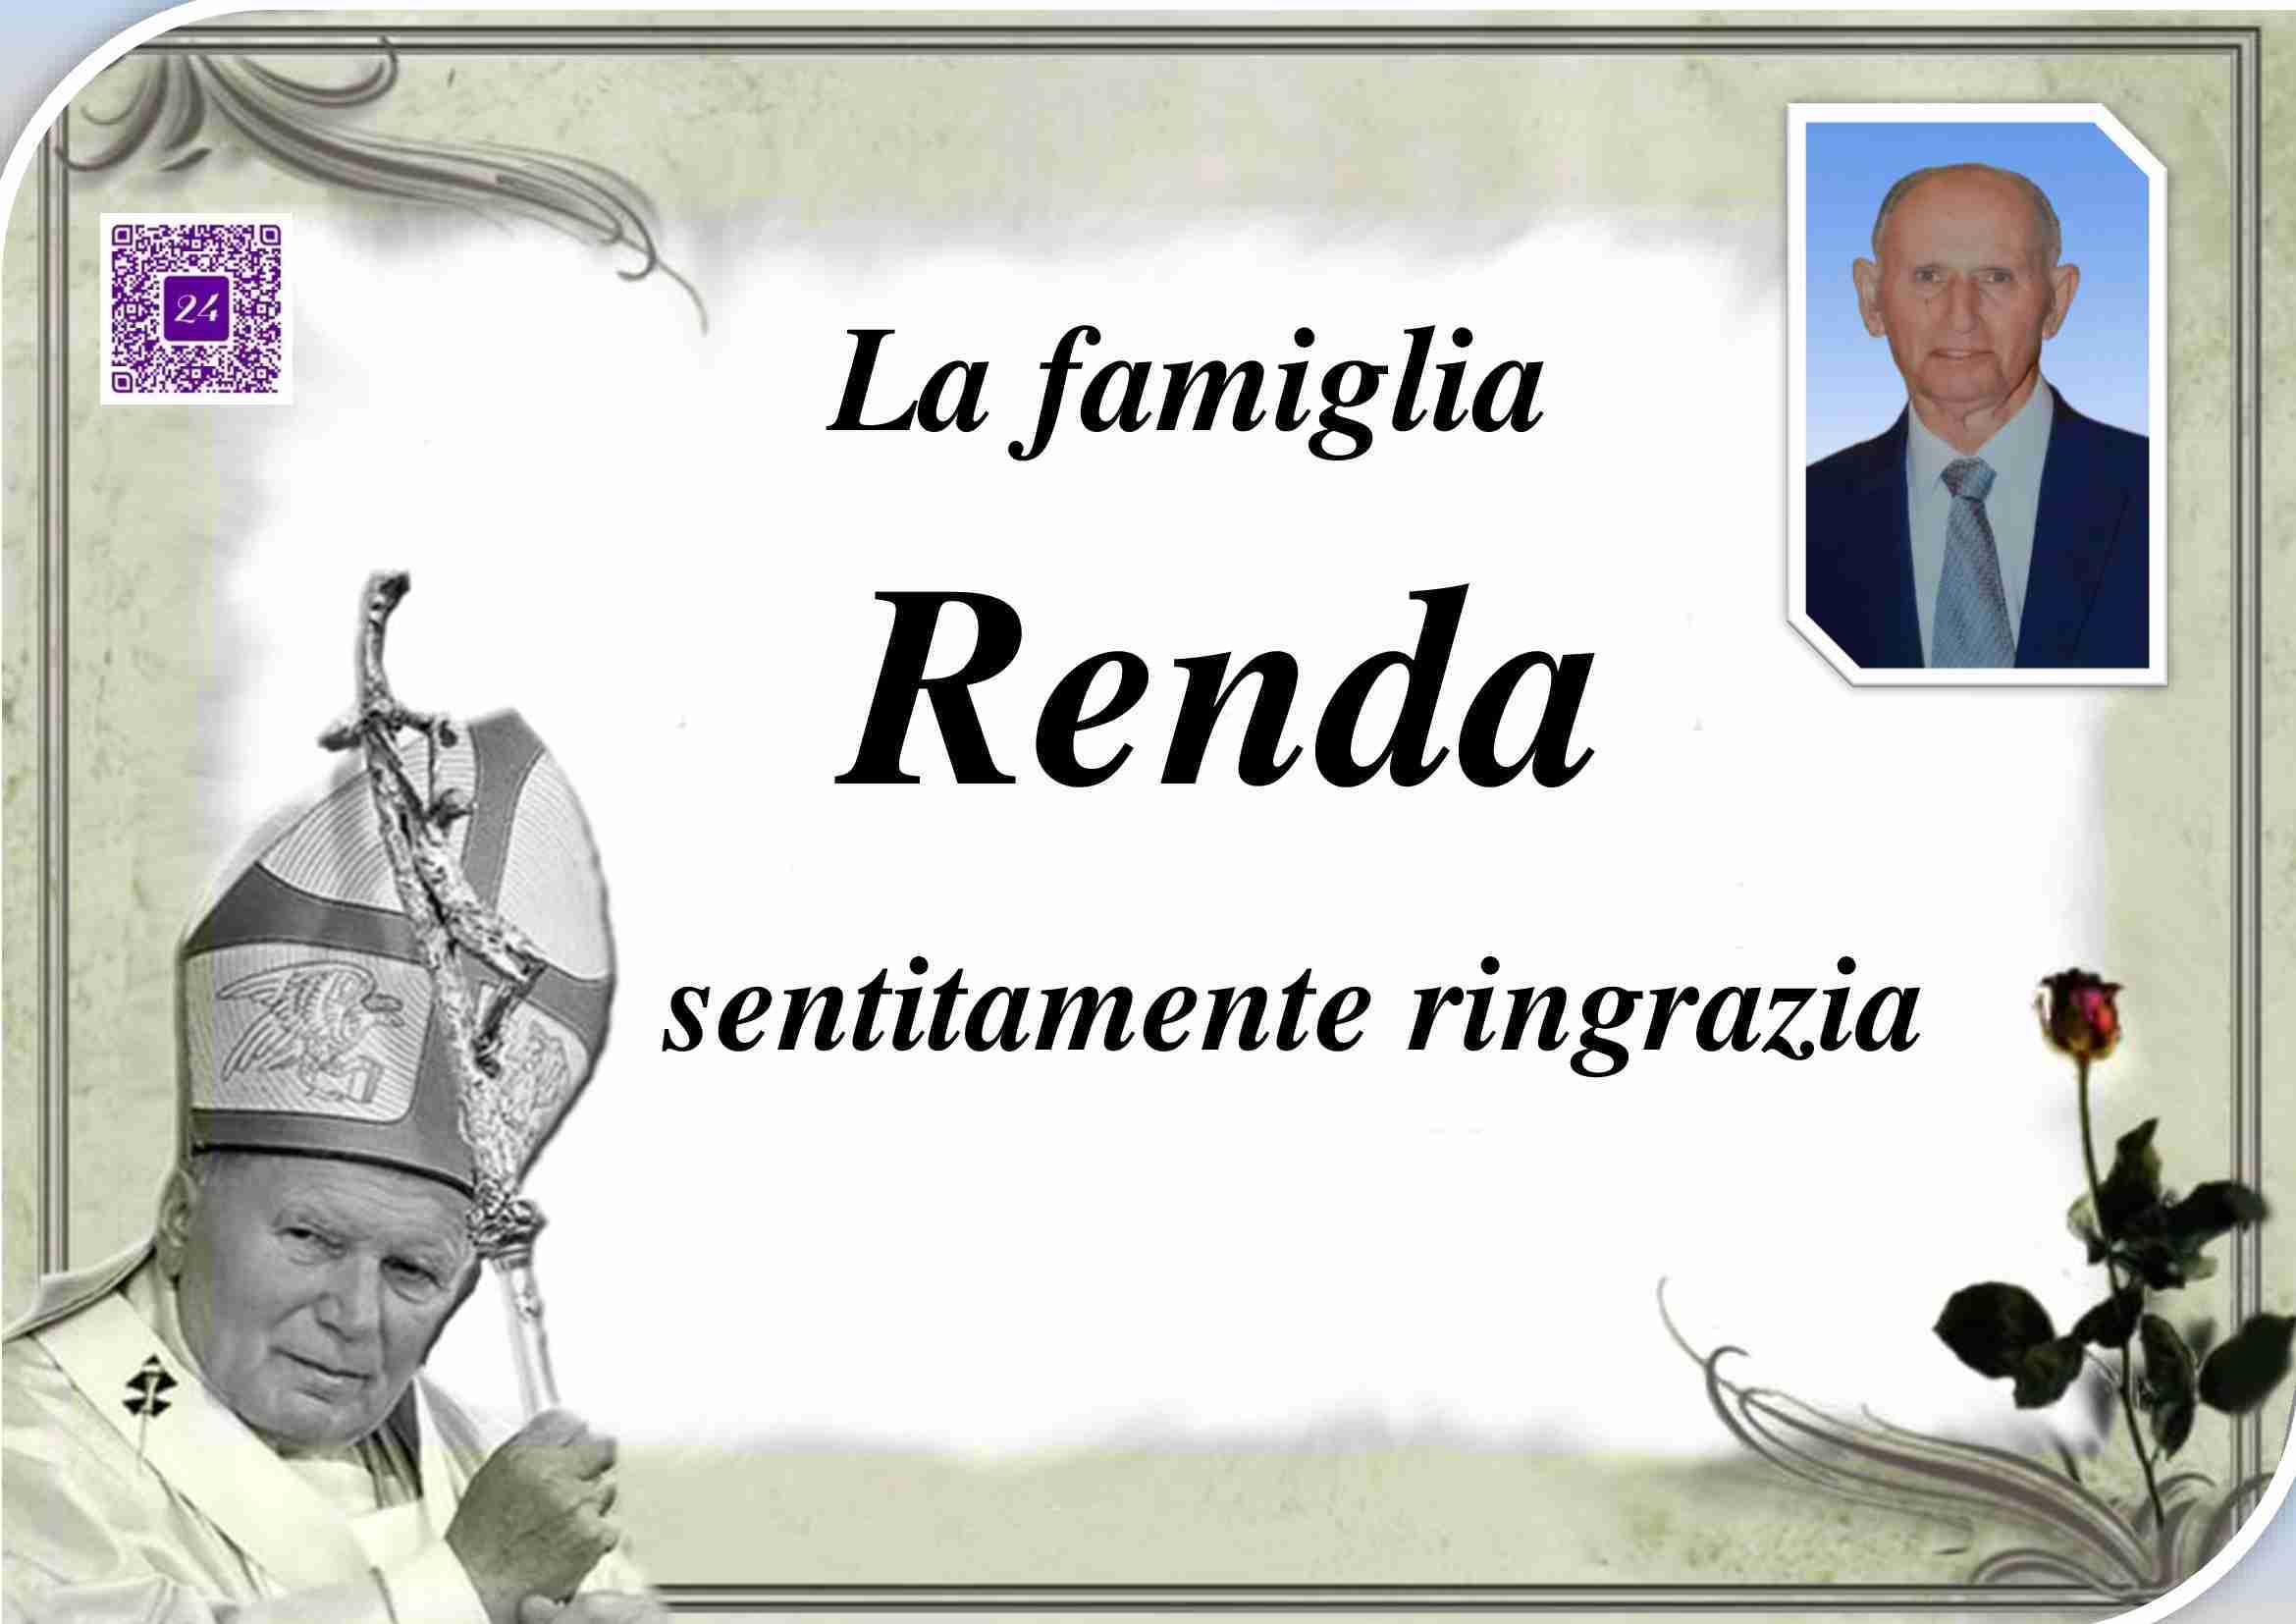 Leonardo Renda